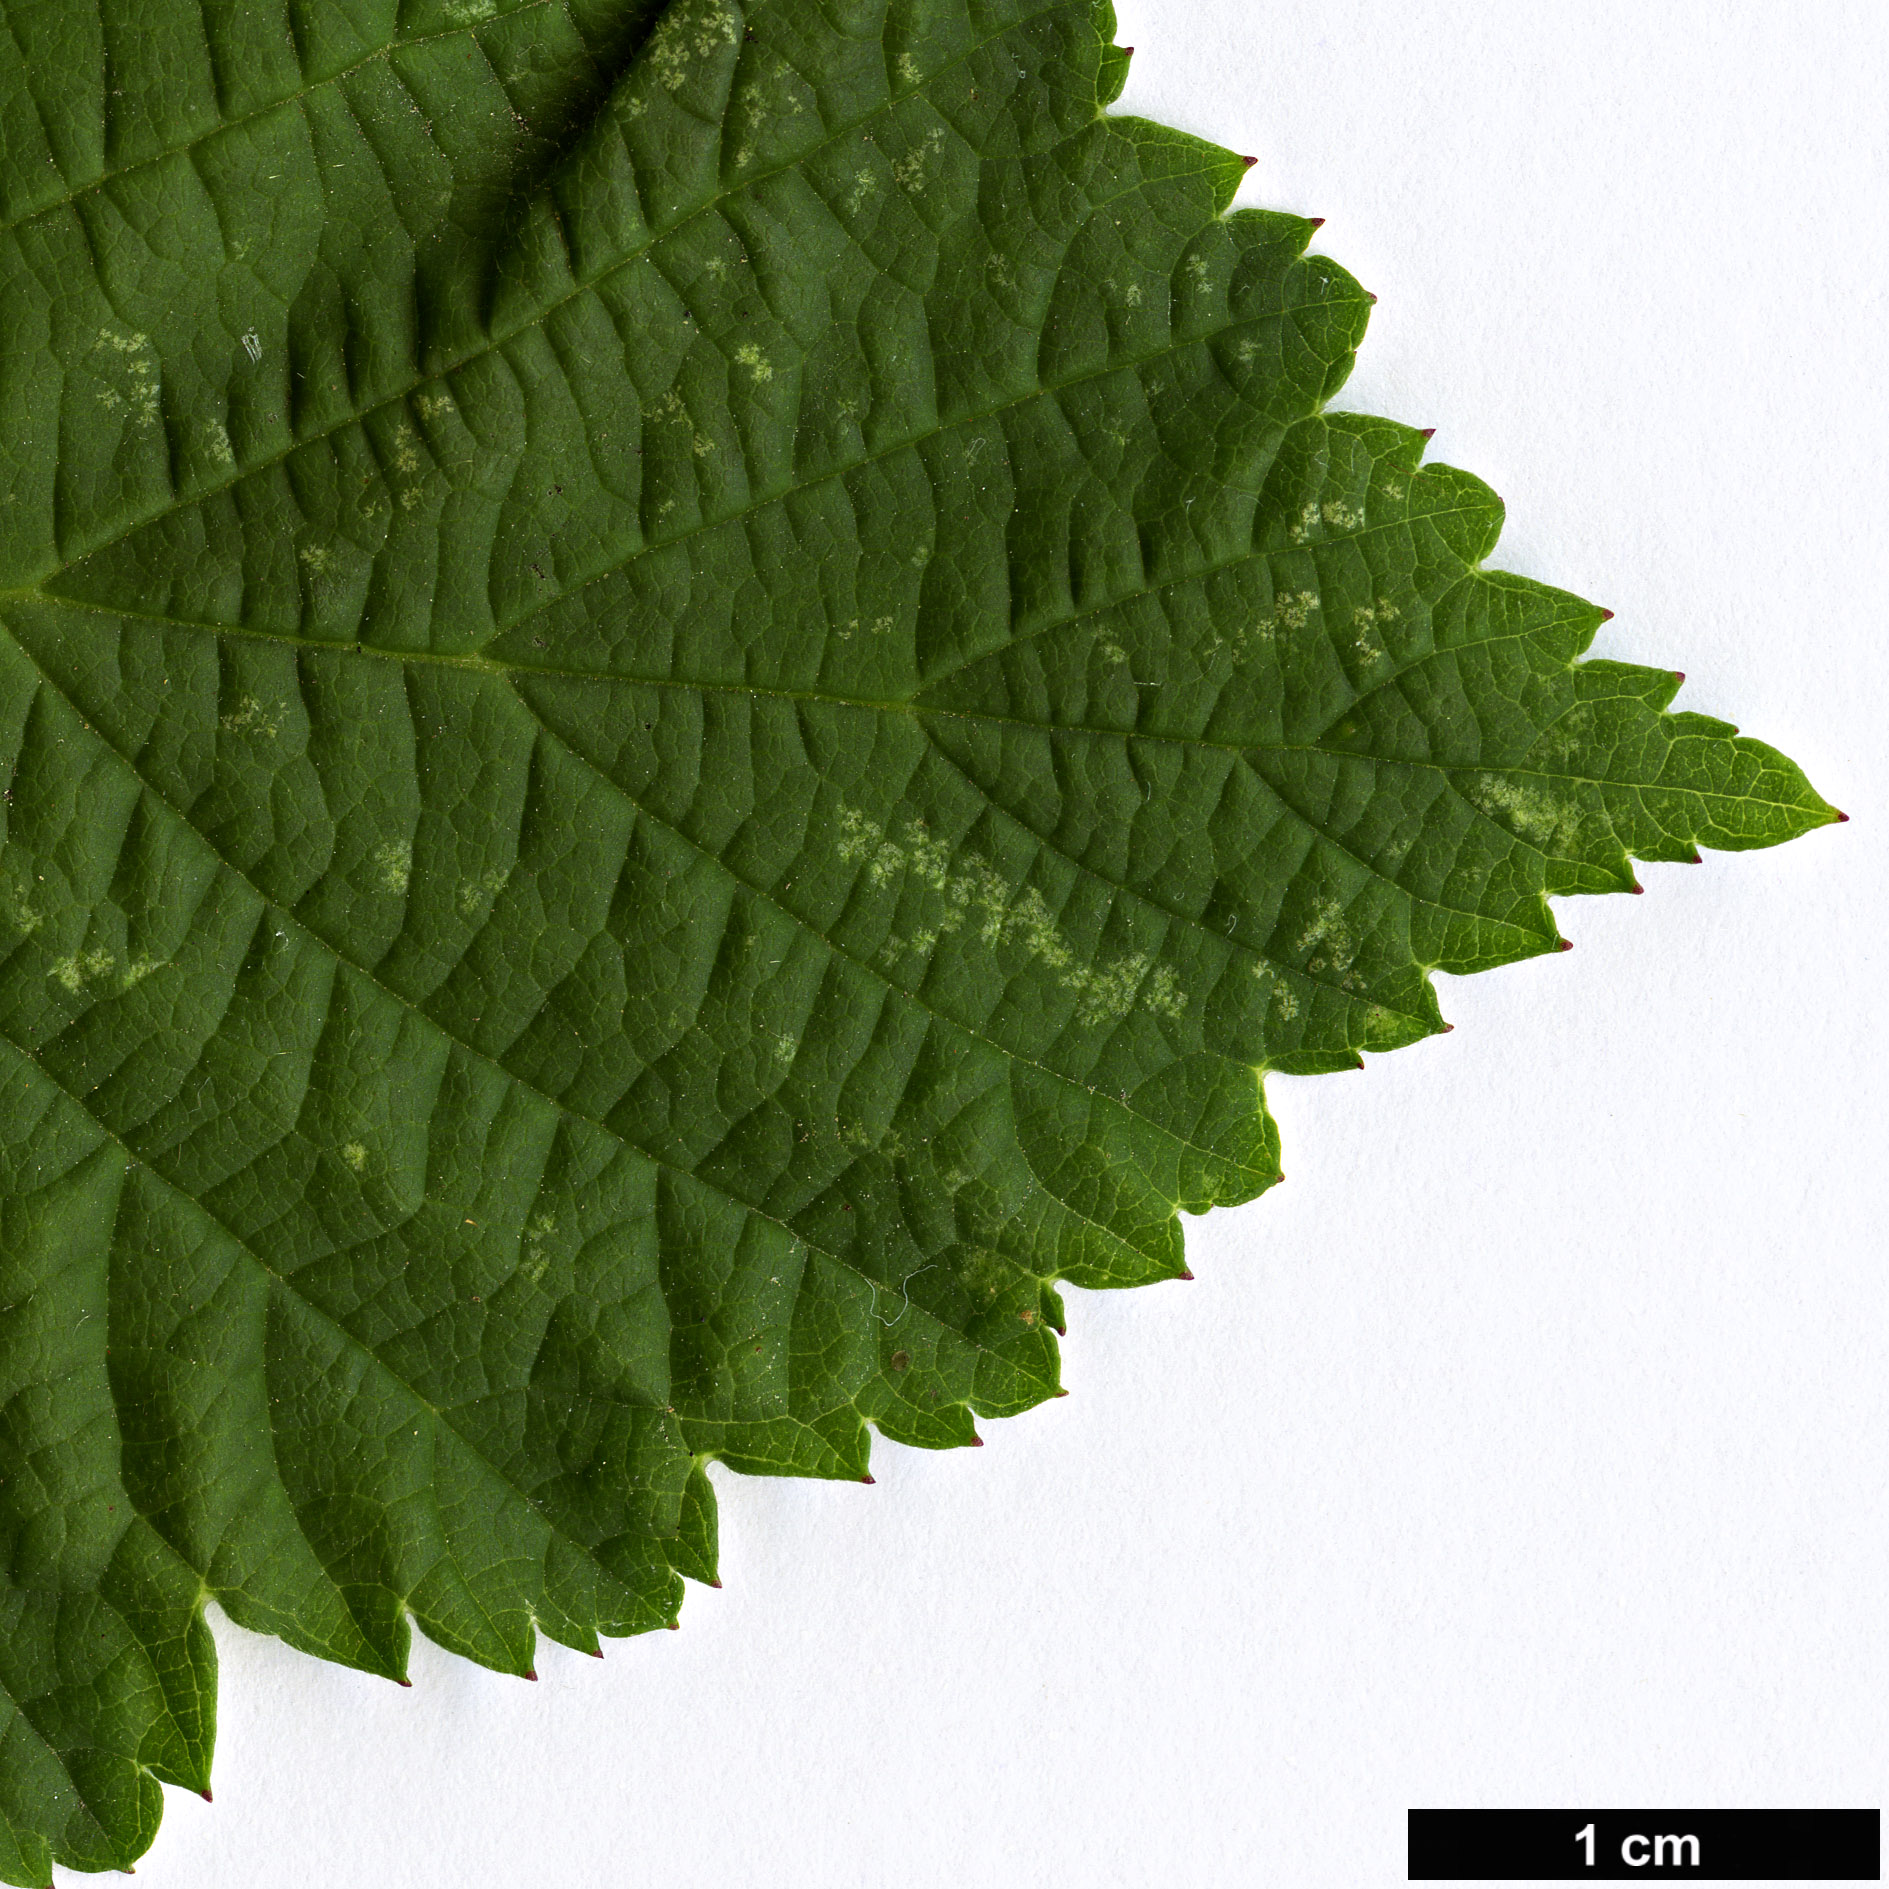 High resolution image: Family: Rosaceae - Genus: Rubus - Taxon: caesius